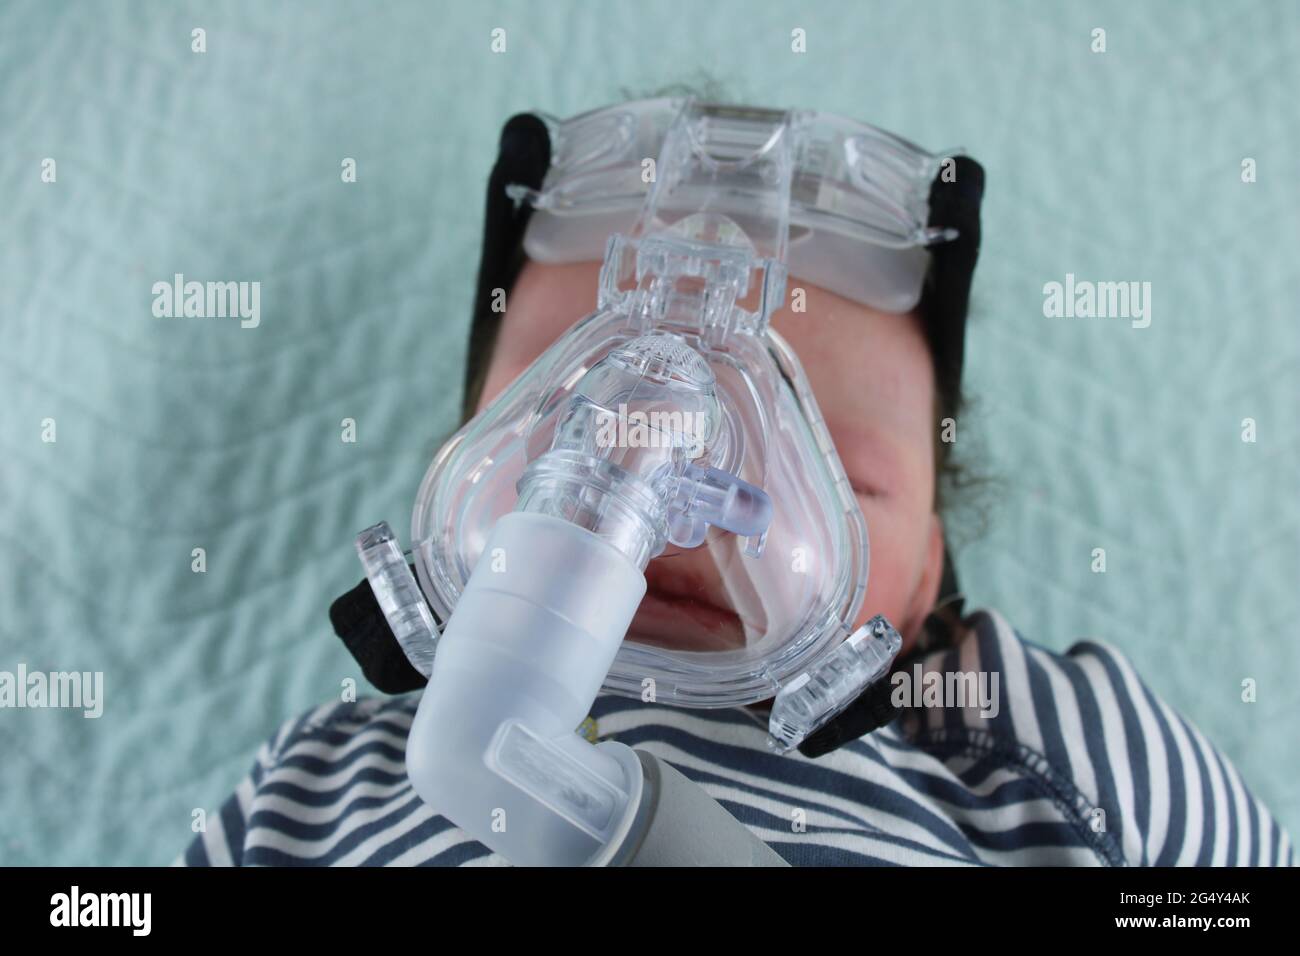 Baby trägt Sauerstoffmaske, Asthma bei Kindern und das Konzept des Respiratory Syncytial Virus, dargestellt durch eine wiedergeborene Puppe, die eine cpap-Maske trägt Stockfoto